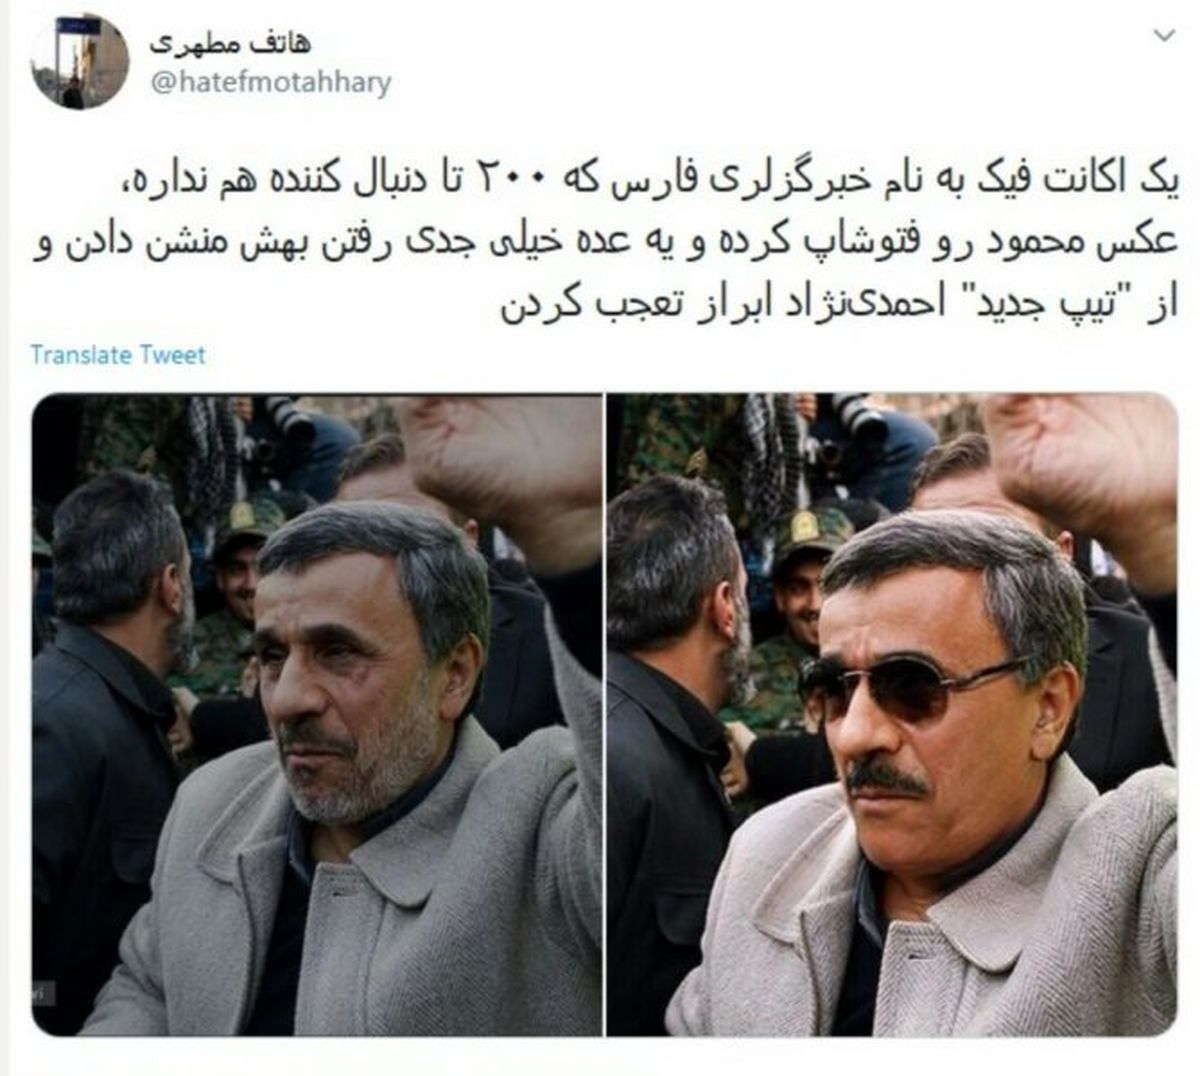 تیپ جدید احمدی نژاد؛ شوخی کاربران شبکه های اجتماعی با احمدی نژاد + عکس